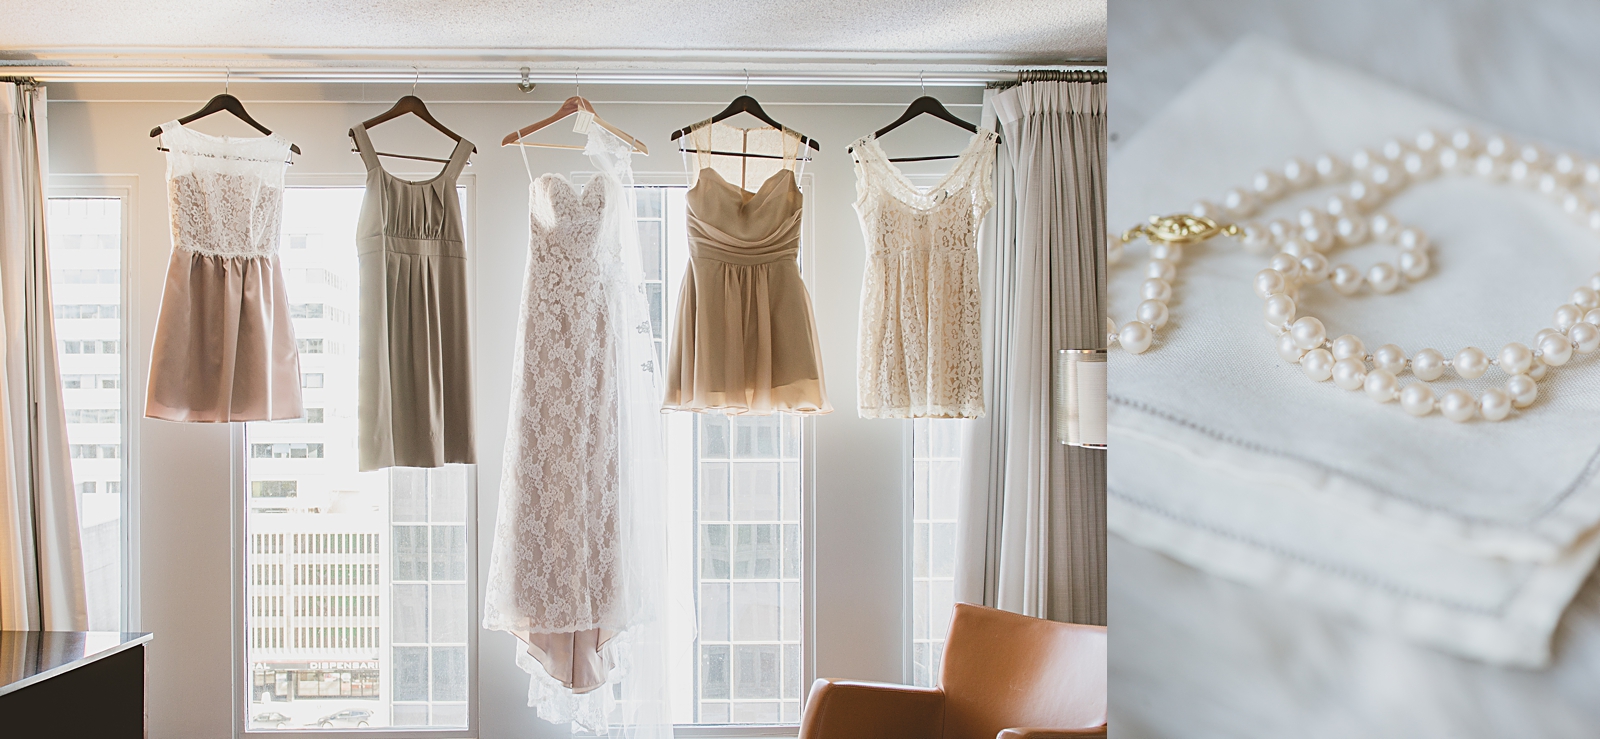 001_mismatched lace bridesmaids dresses